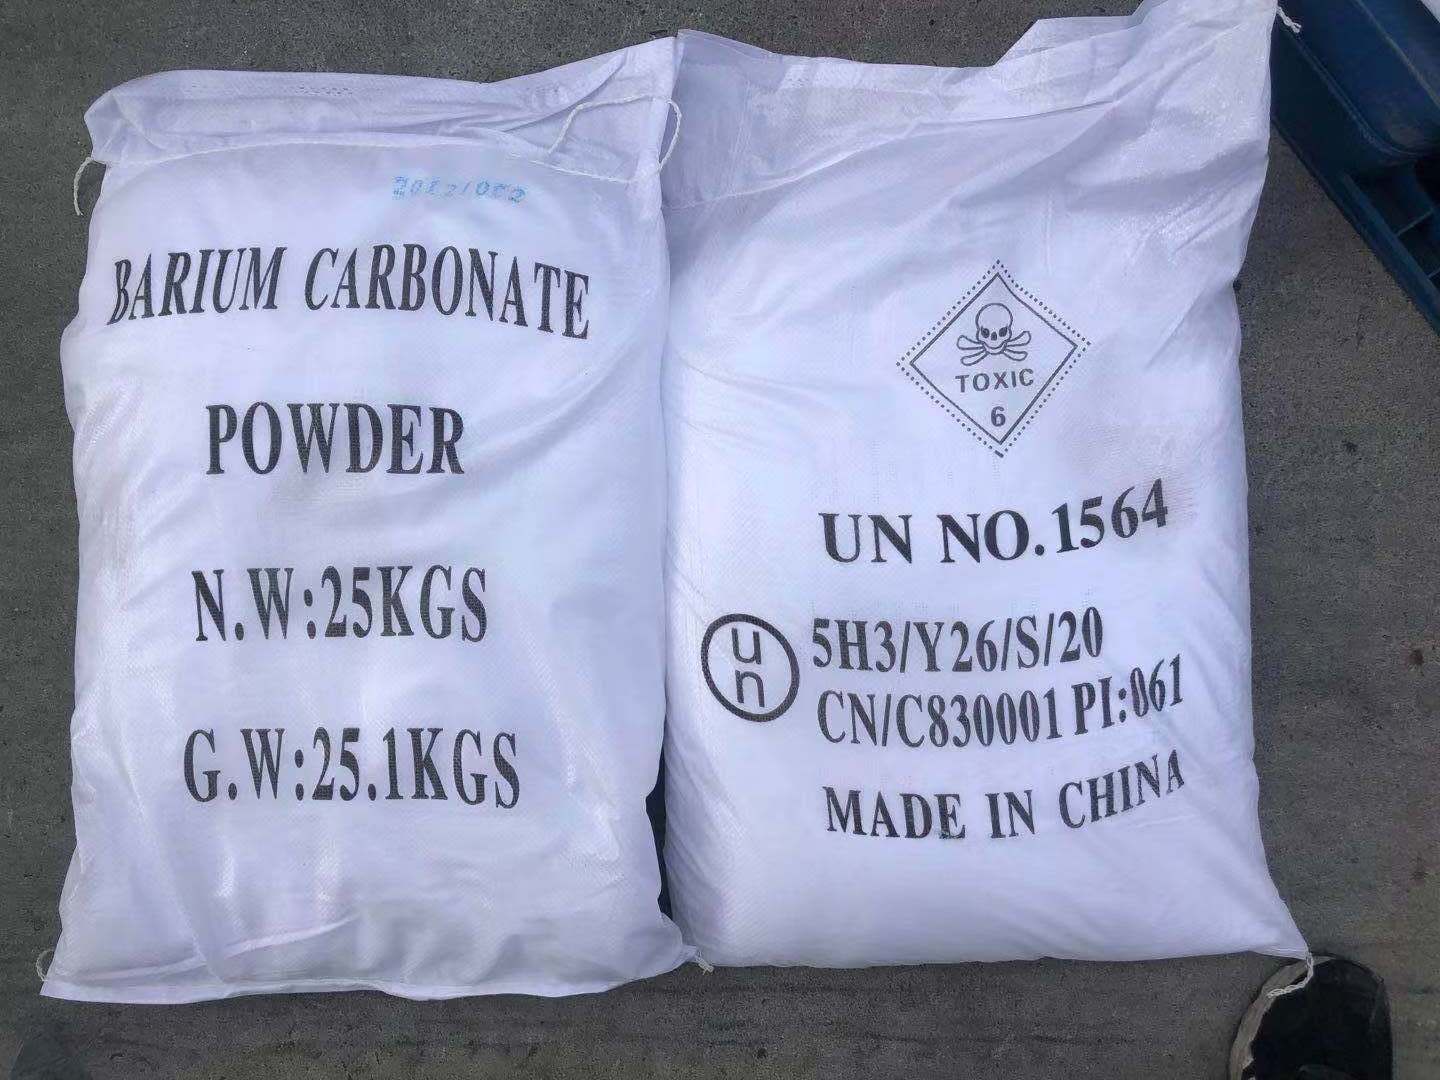 Barium carbonate powder